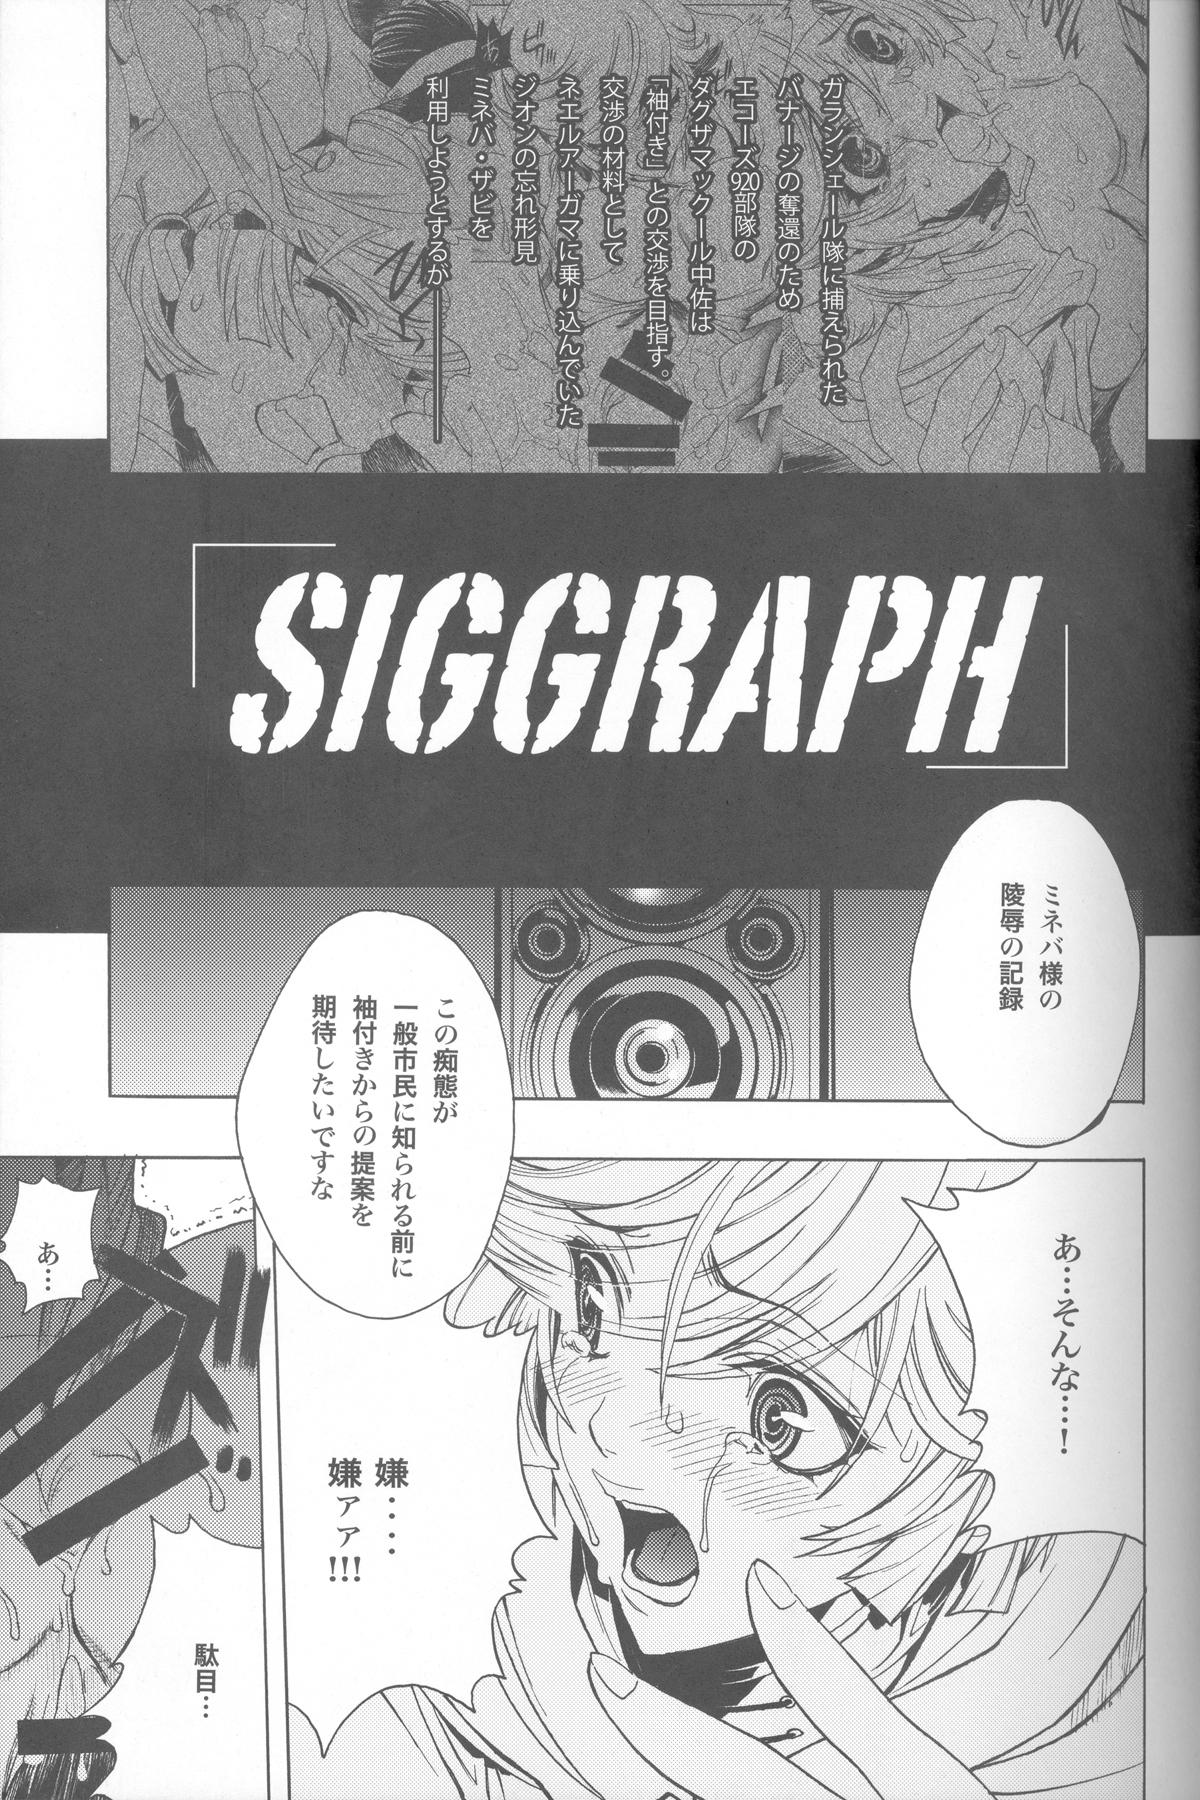 Pierced SIGGRAPH - Gundam unicorn Peru - Page 4